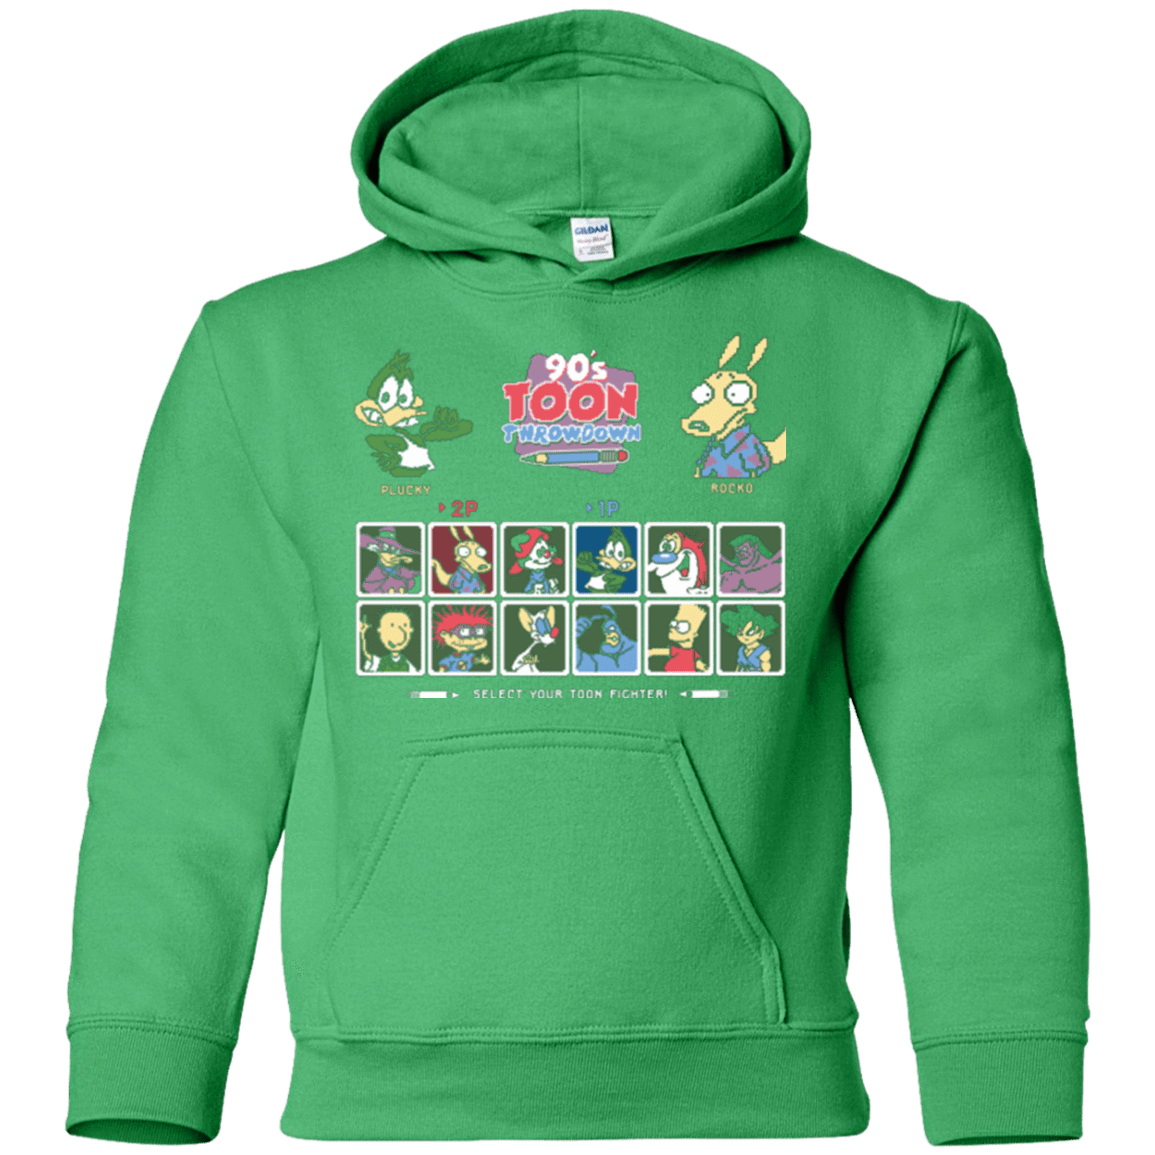 Sweatshirts Irish Green / YS 90s Toon Throwdown Youth Hoodie